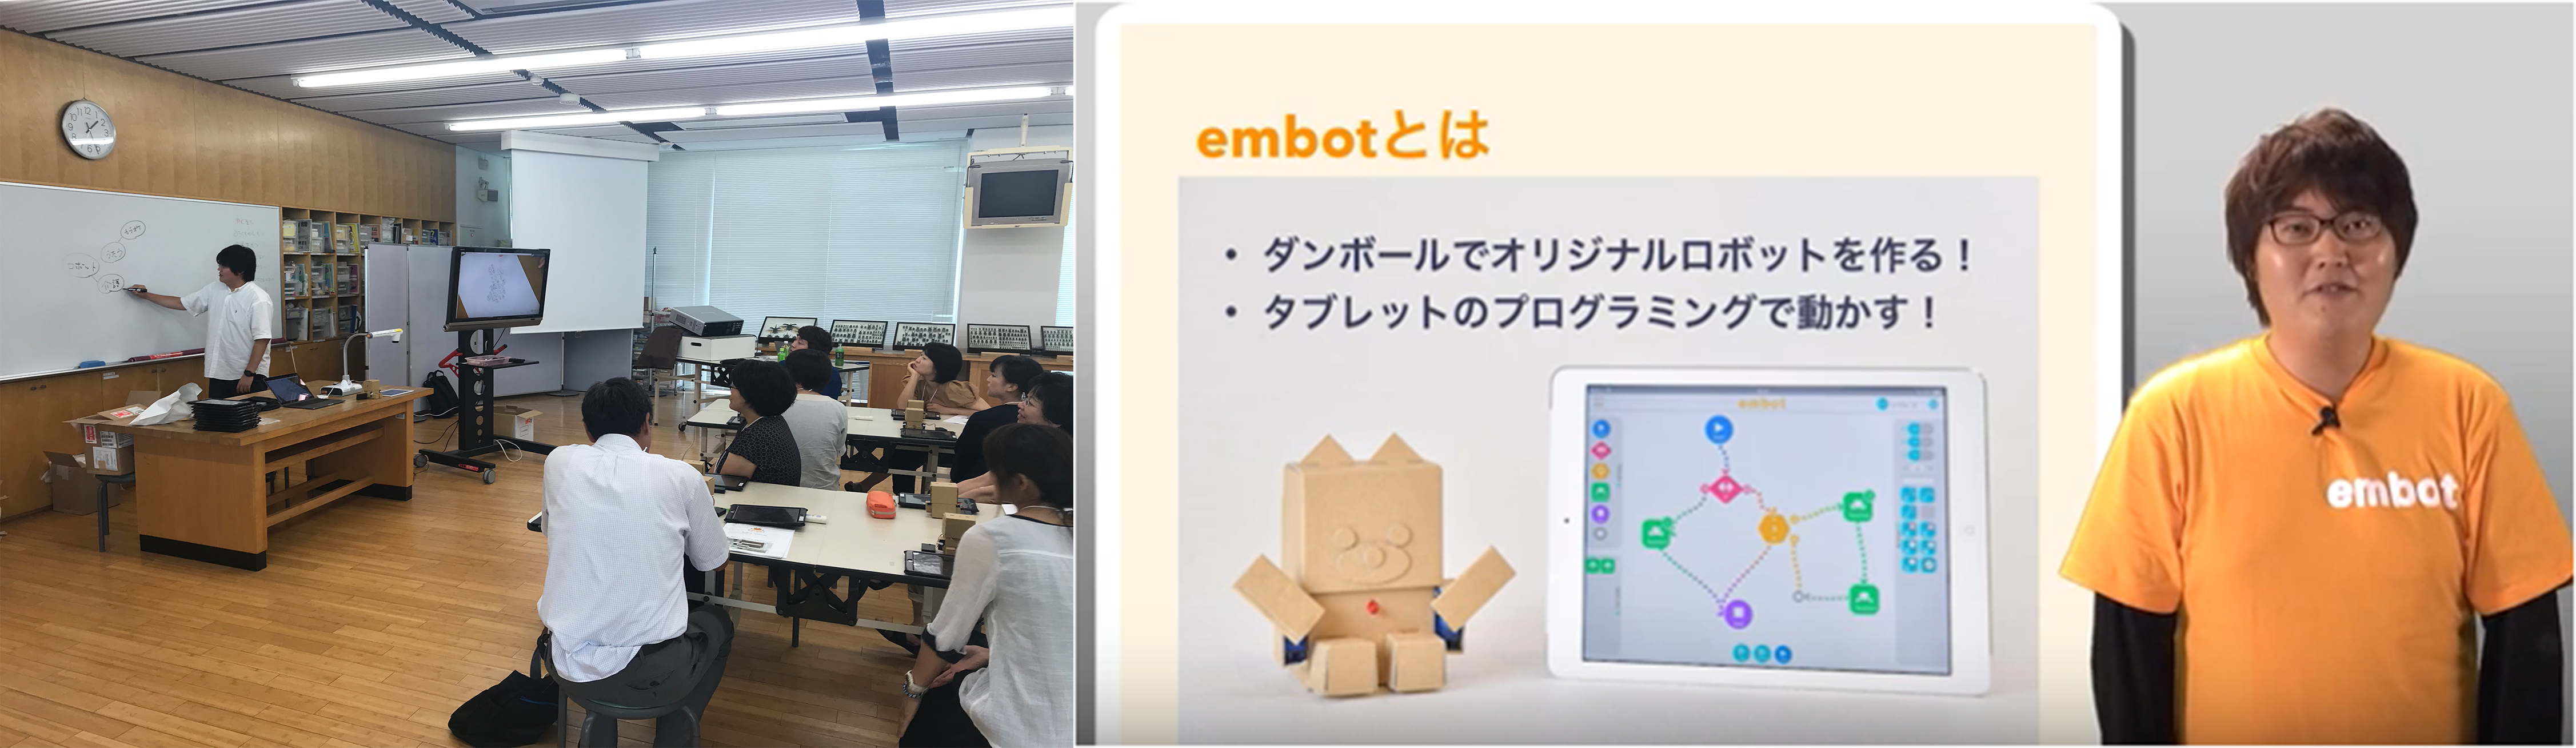 ダンボールで組み立てたロボットをタブレットで操作するプログラミング教材 Embot Ict教育ニュース